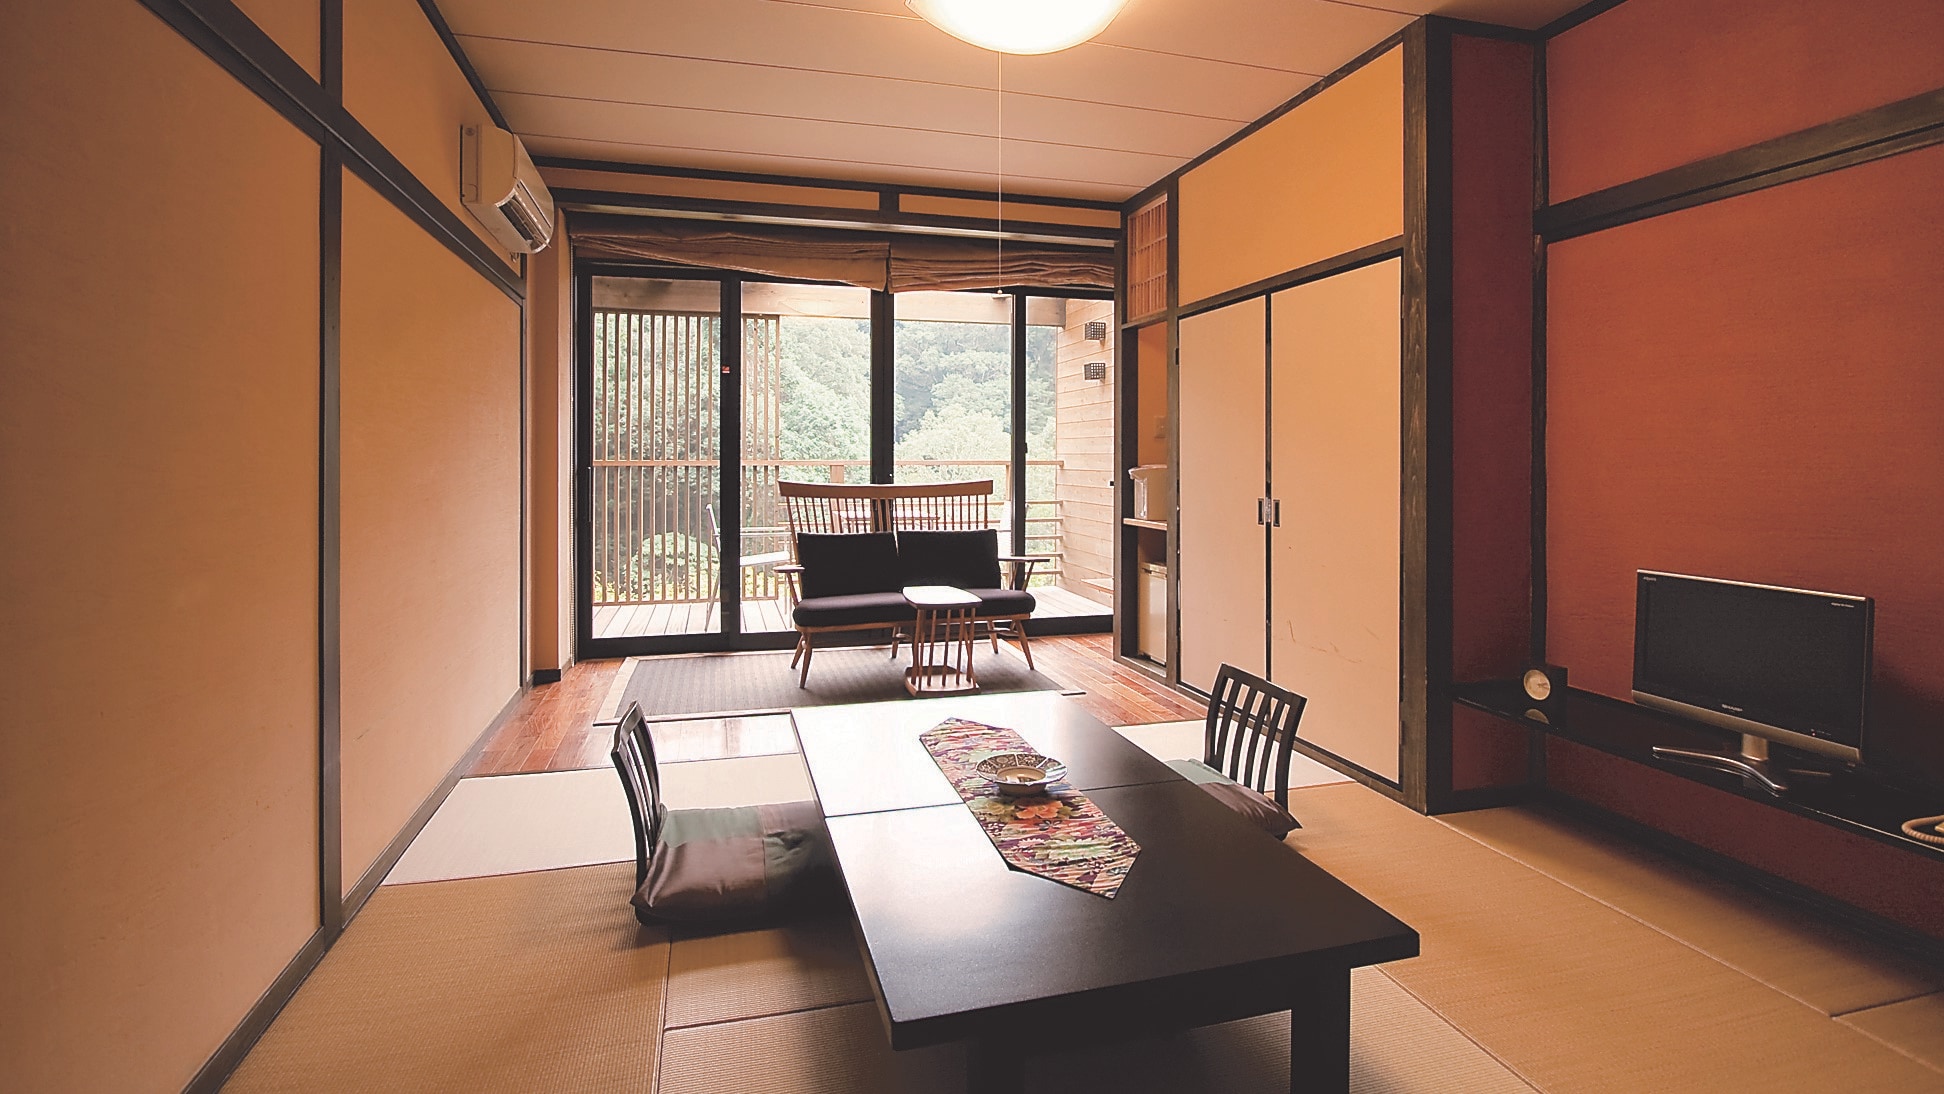 Japanese-style room 10 tatami mats 3 people